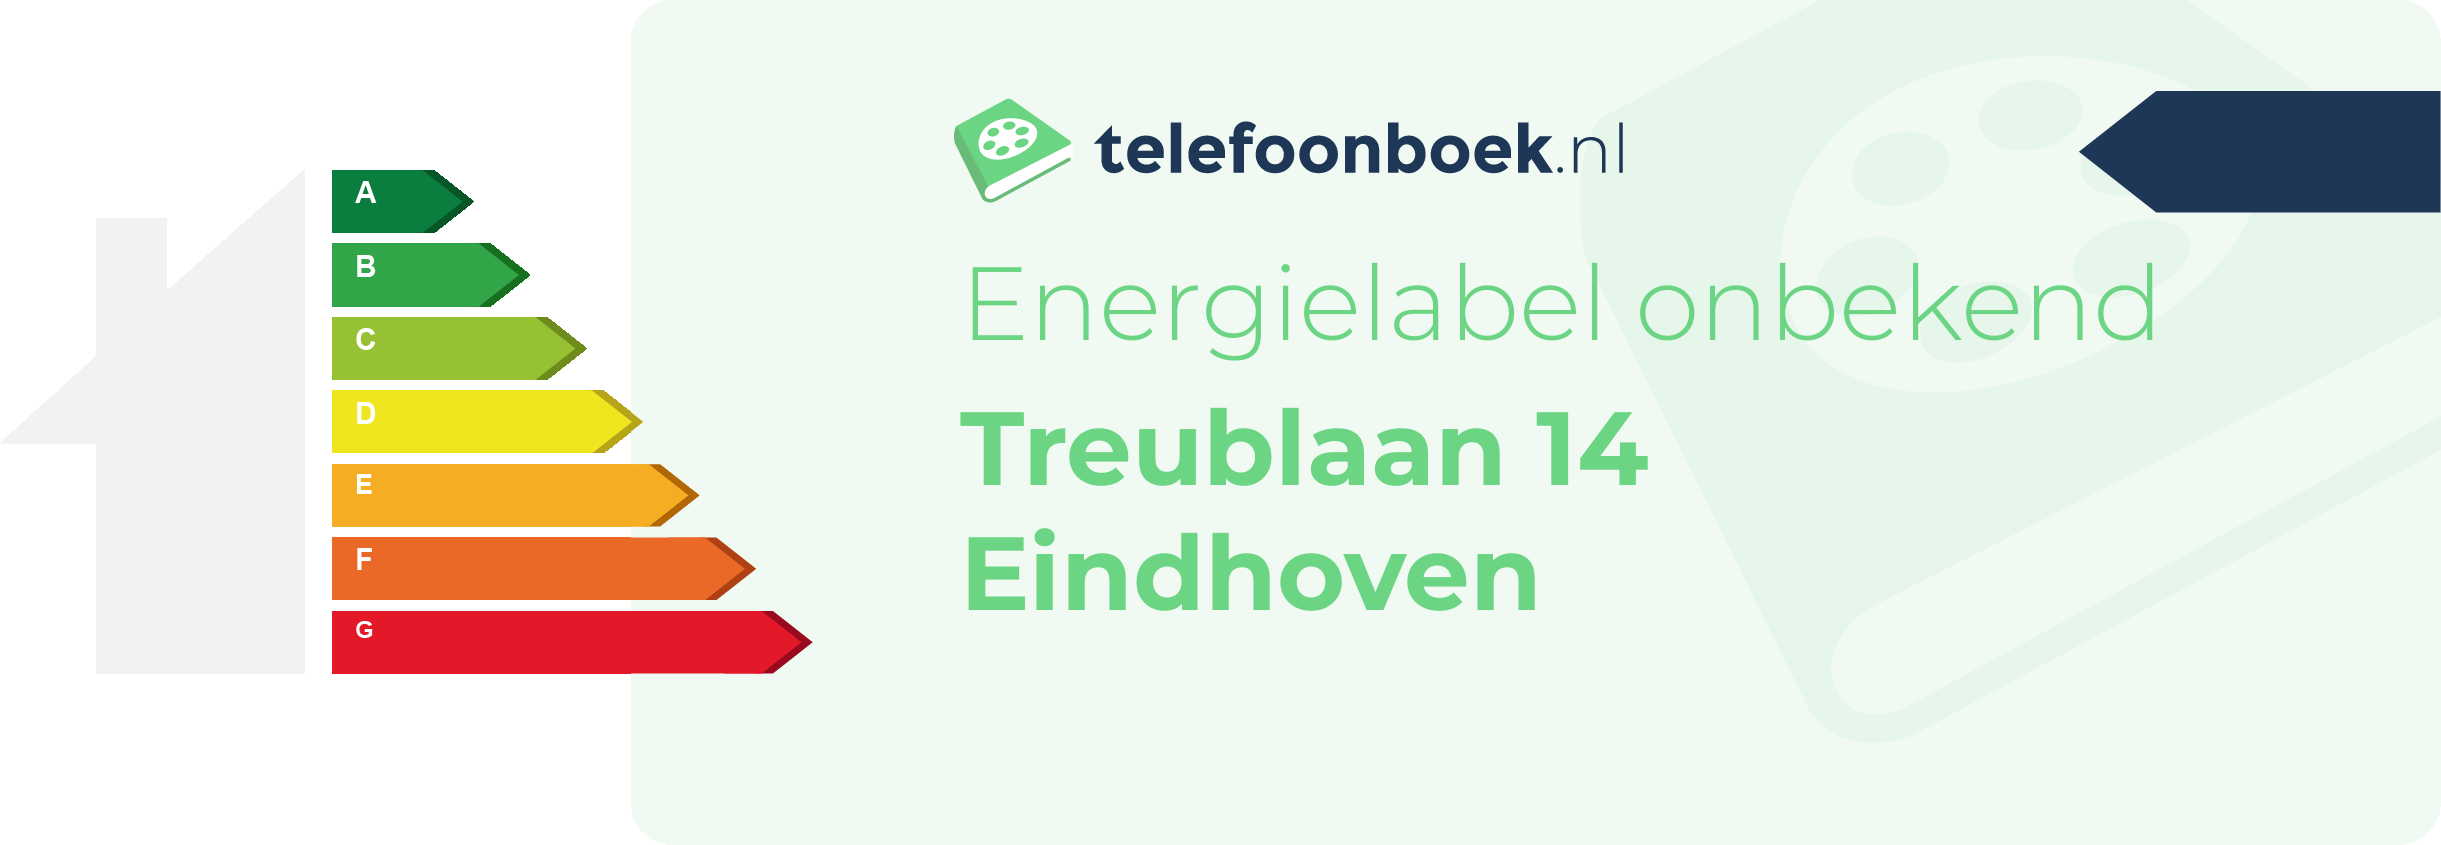 Energielabel Treublaan 14 Eindhoven